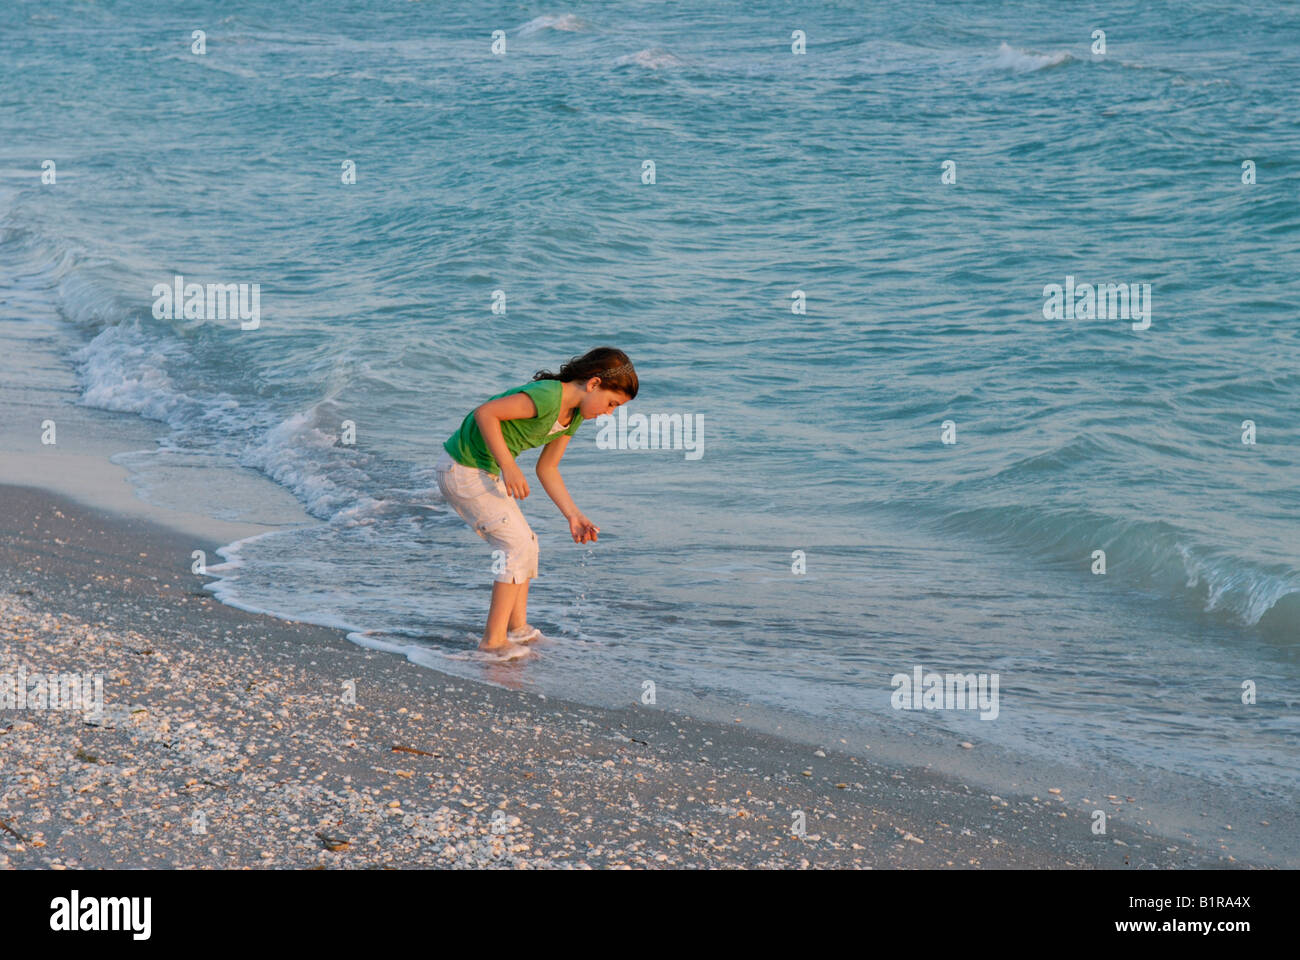 Jeune fille 9 10 ans la collecte des coquillages au bord de l'eau Bowman's Beach Sanibel Island Florida au coucher du soleil Banque D'Images